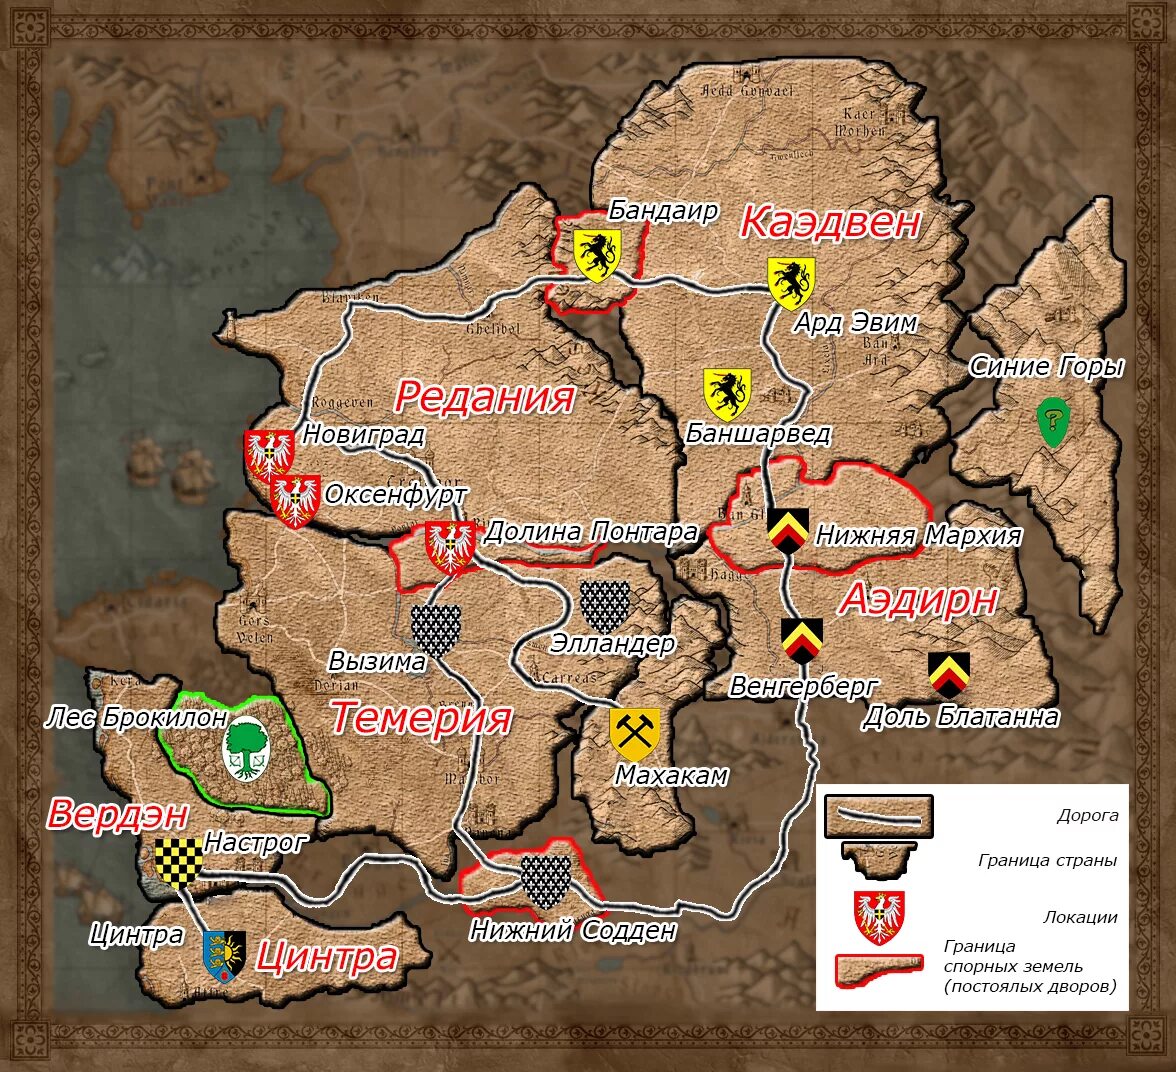 Сефироты ведьмак где. Ведьмак карта континента по книге. Карта континента Ведьмак 3. Ведьмак 1 карта мира. Карта северных королевств Ведьмак.